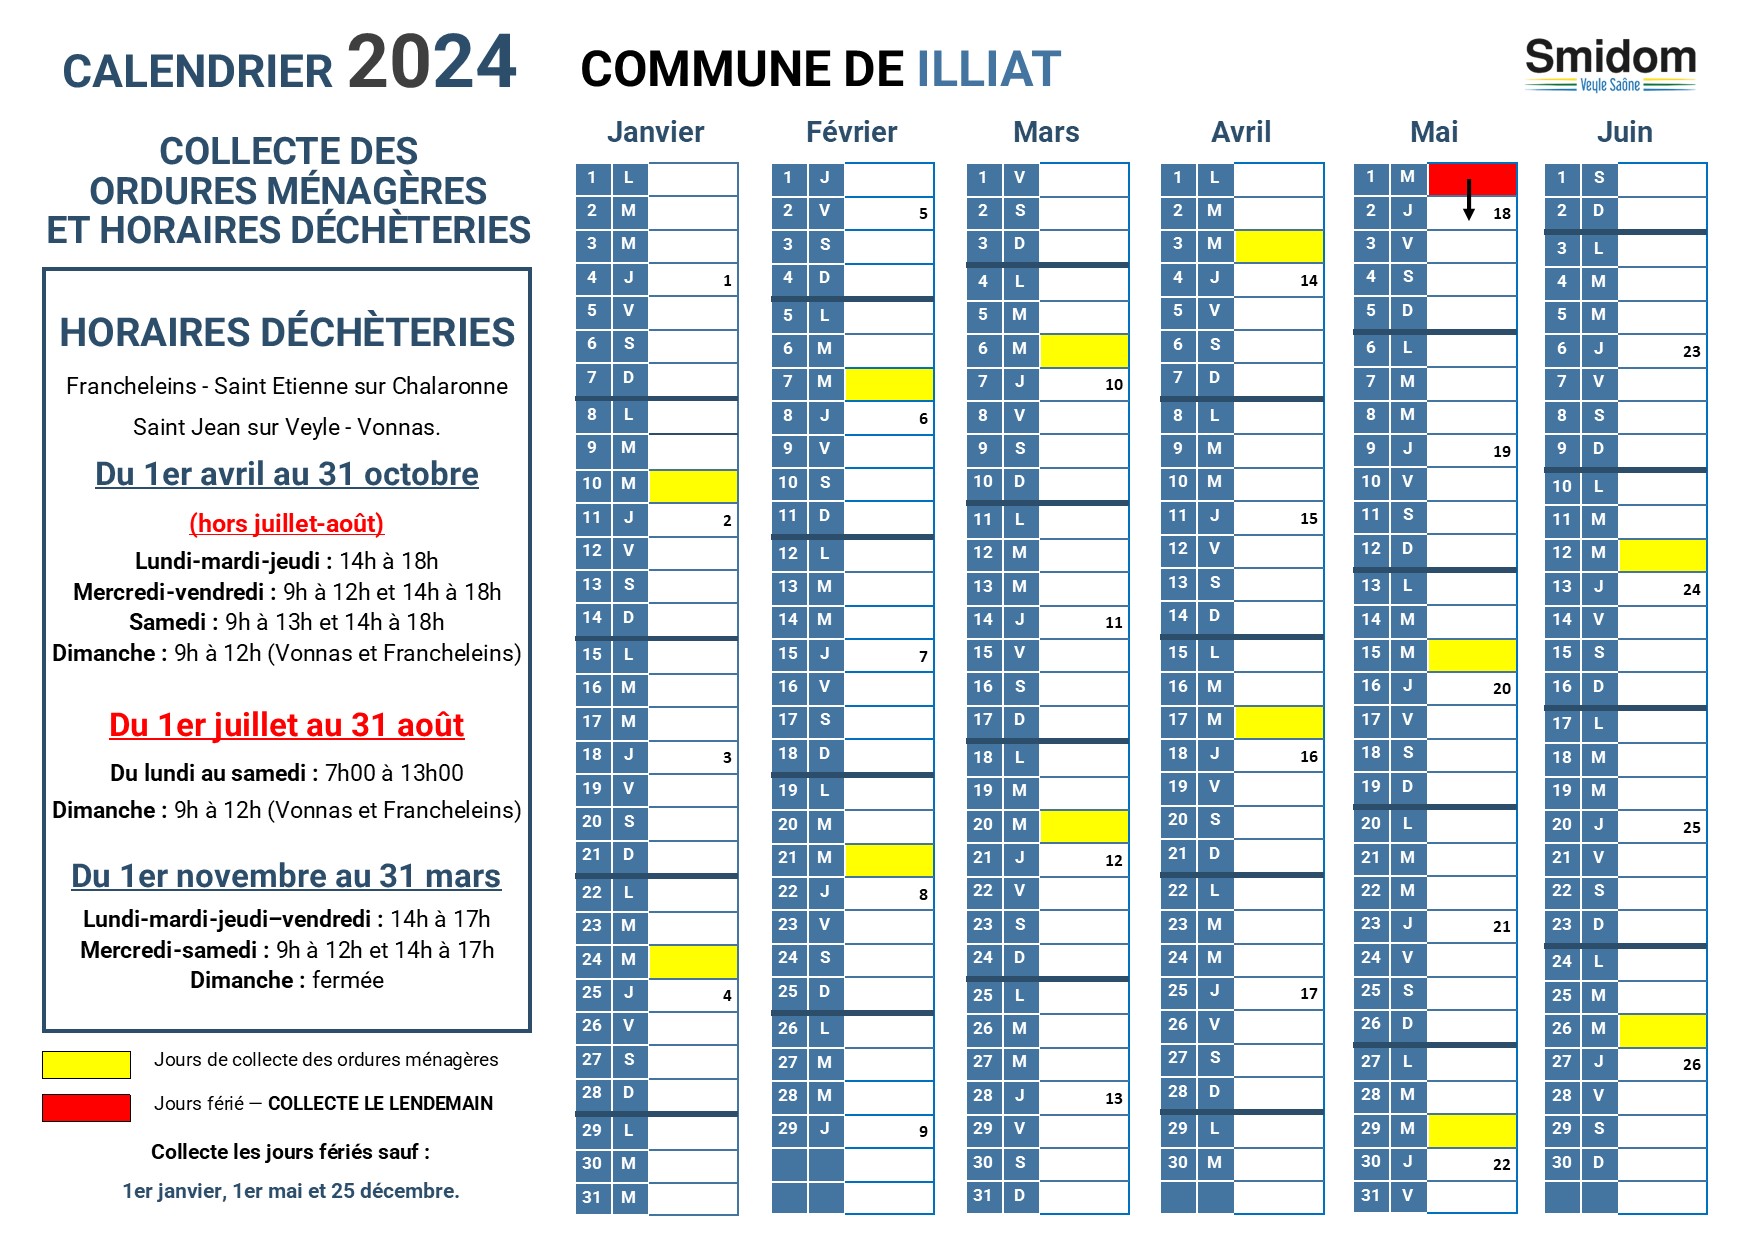 ILLIAT - Calendrier 2024 - 1.jpg